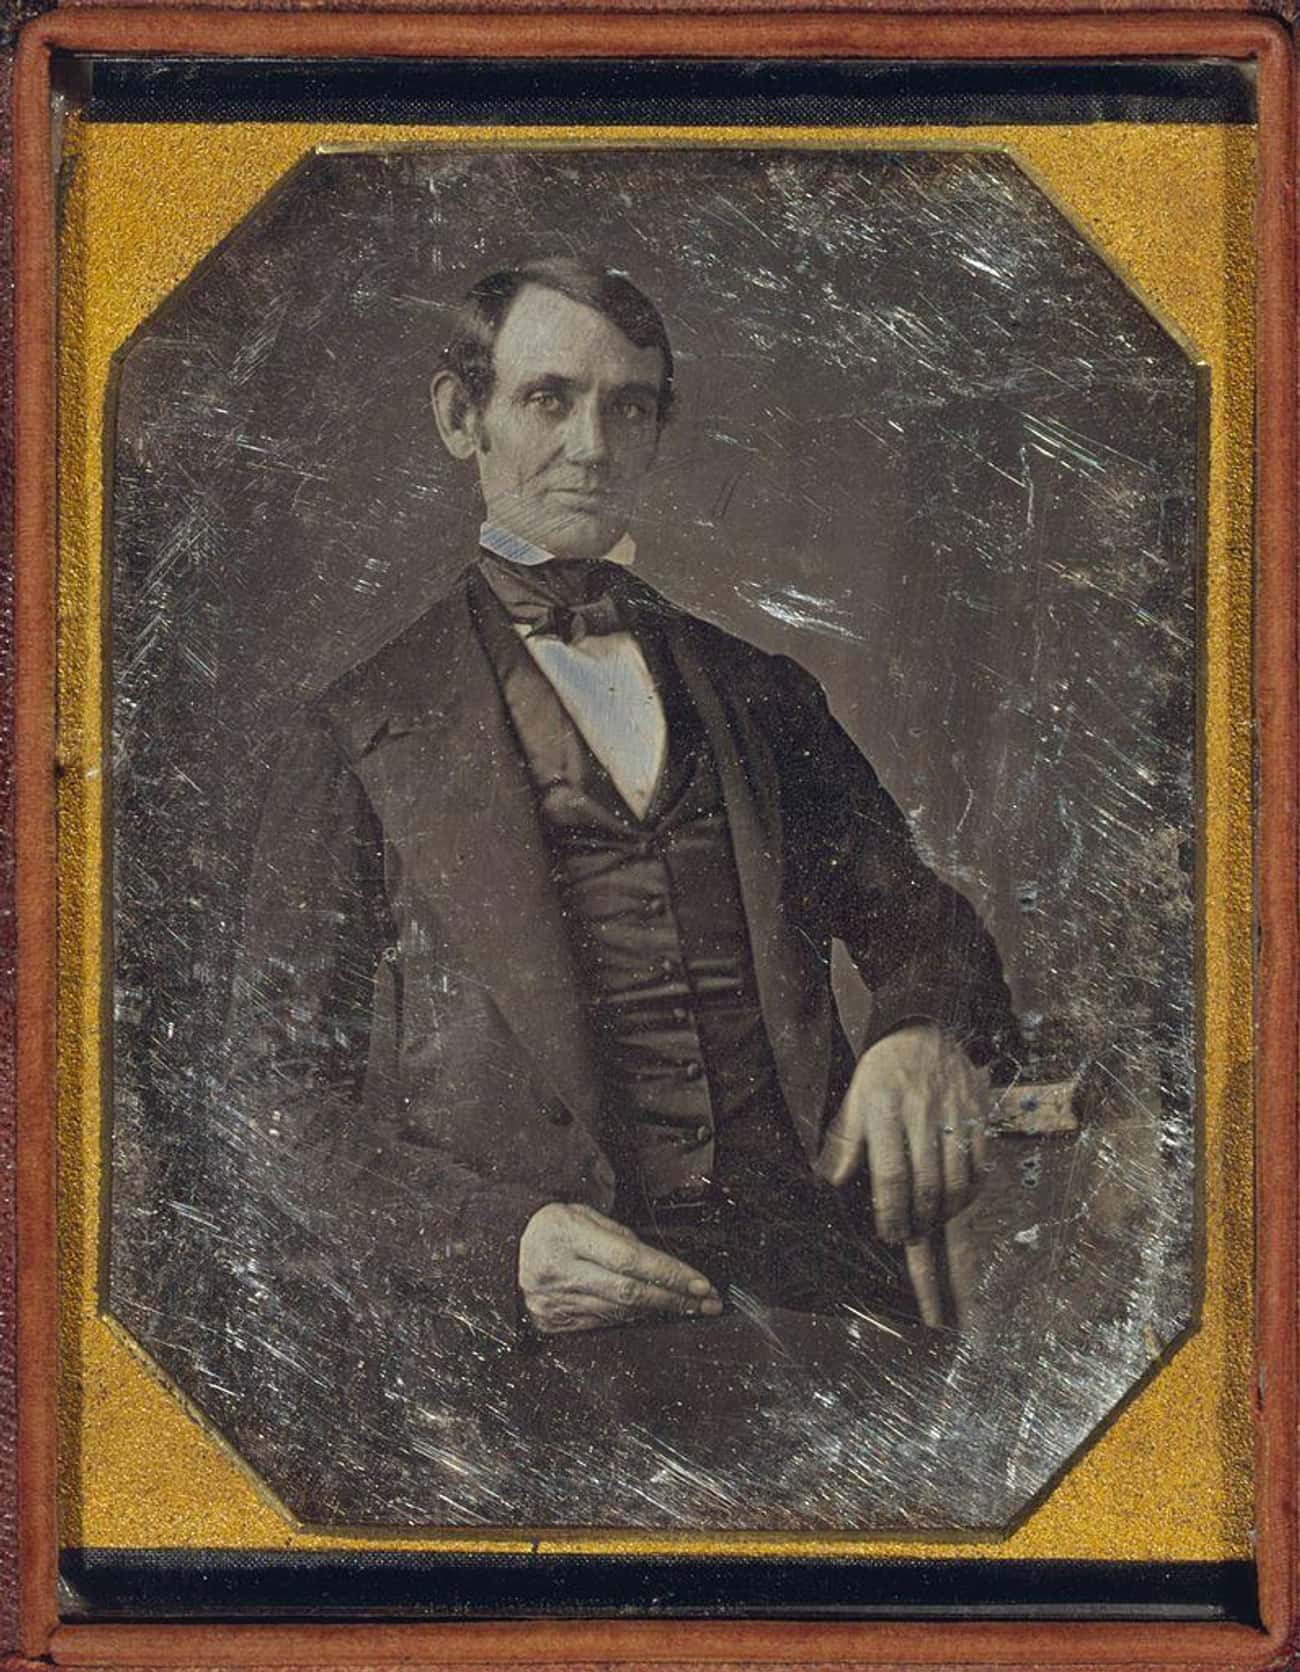 President Abraham Lincoln (c. 1846)